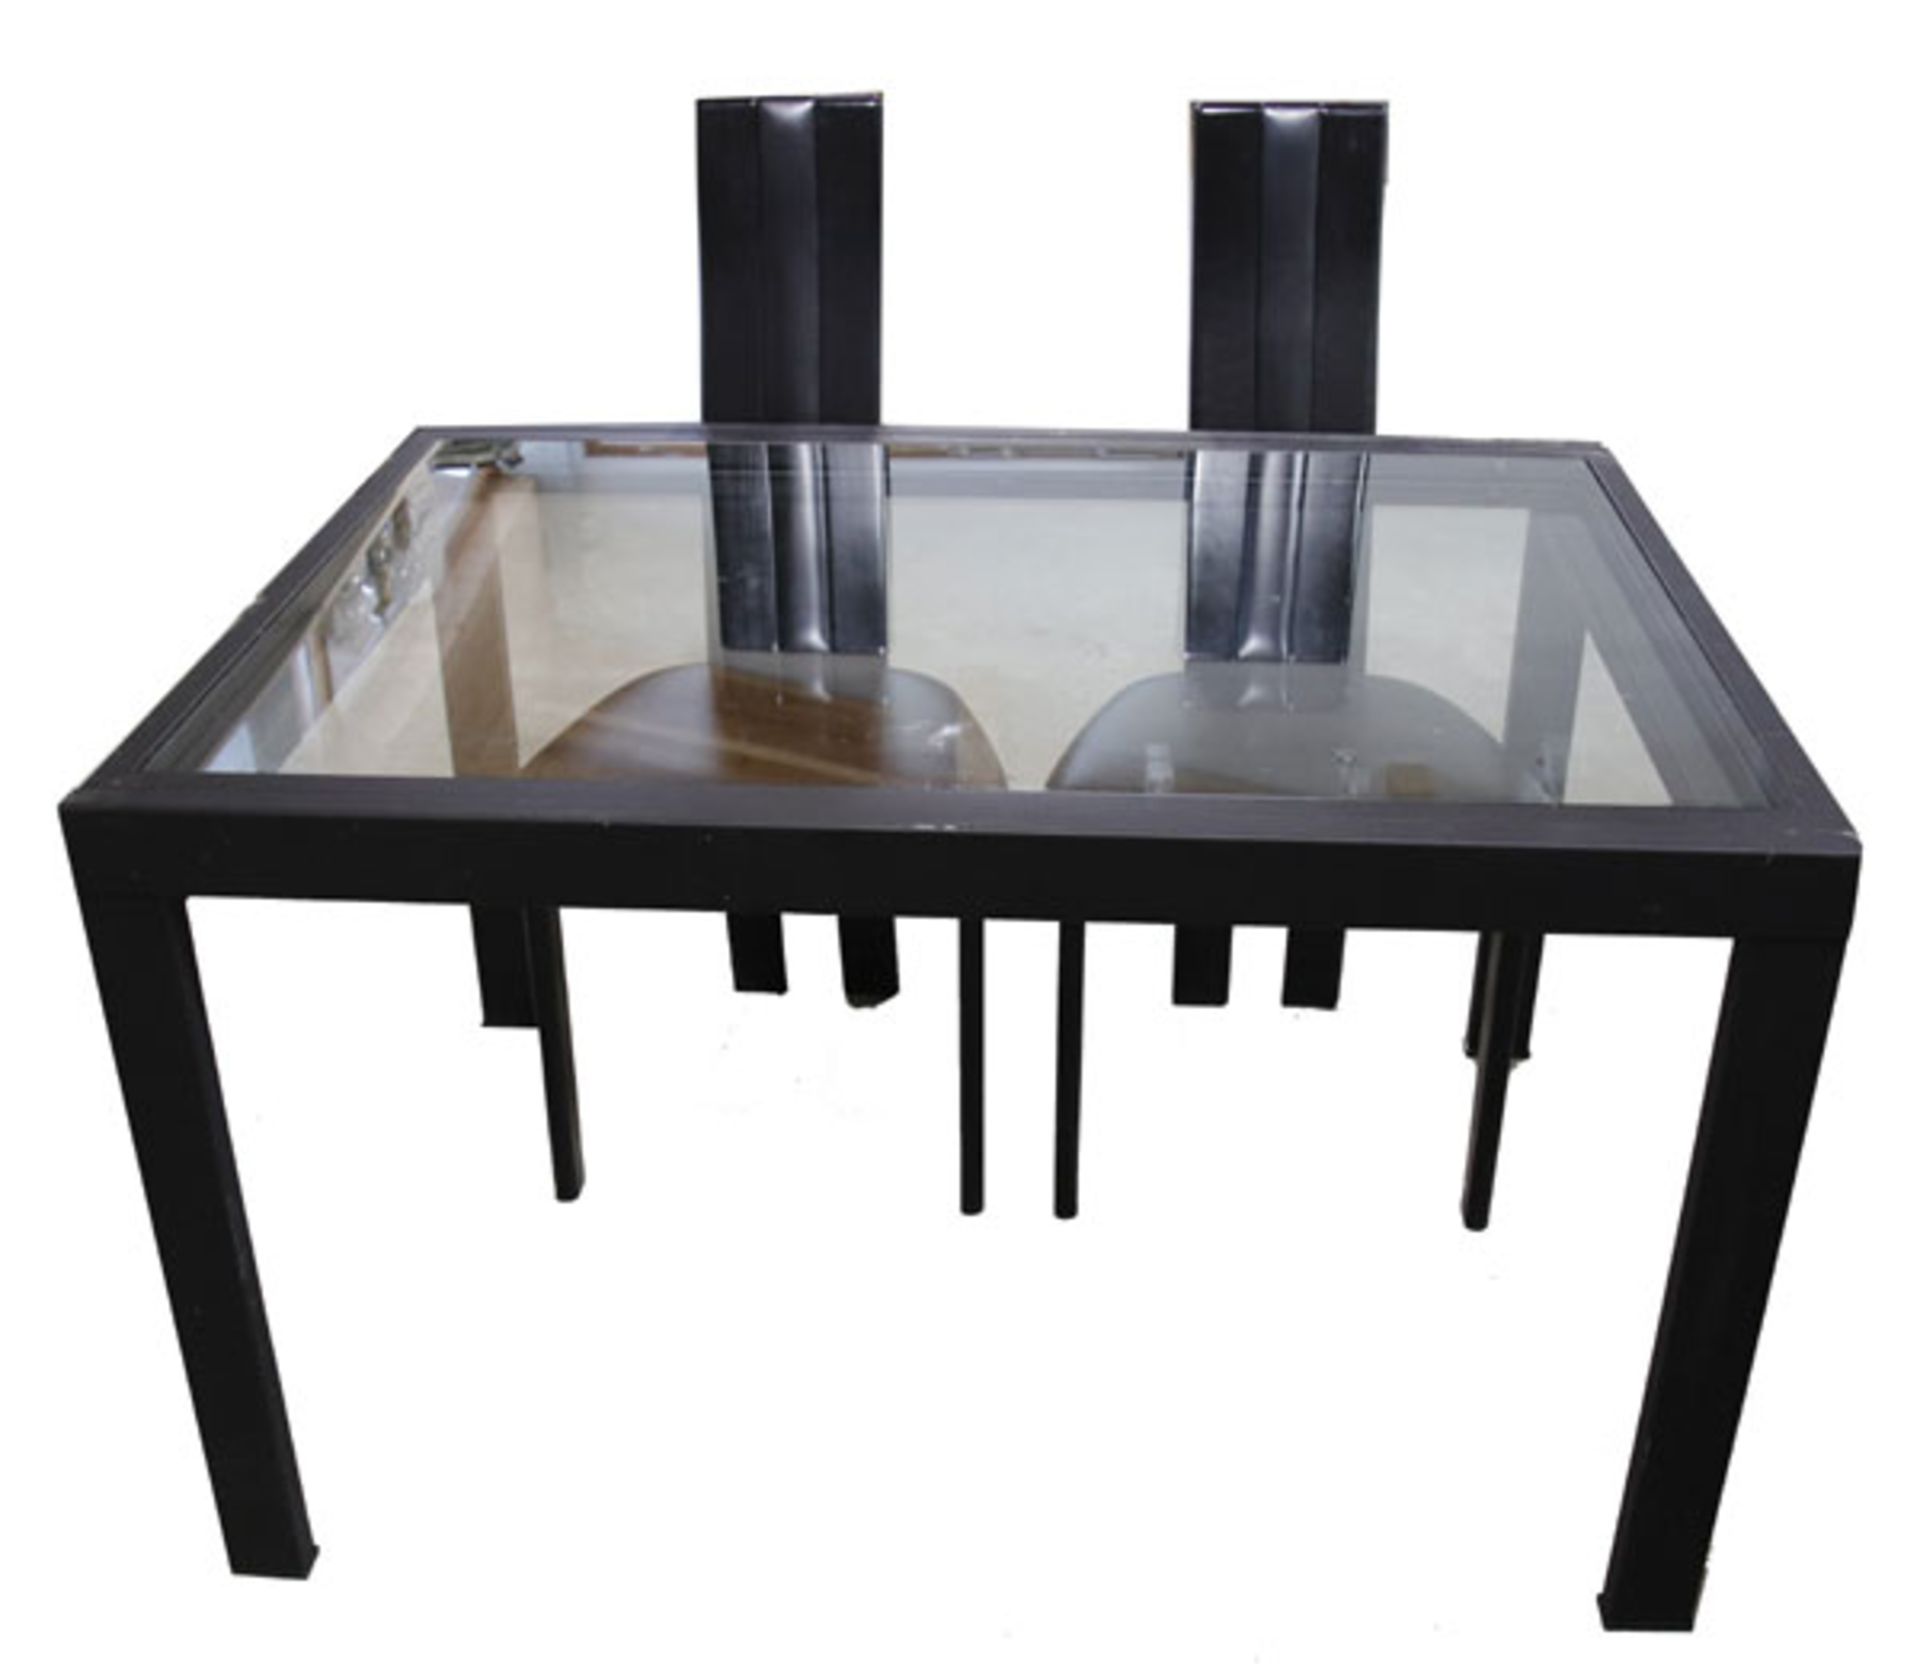 Metall Tisch mit Glasplatten, ausziehbar, H 74 cm, B 89 cm, L 123/246 cm, und 4 schwarze Holzstühle,